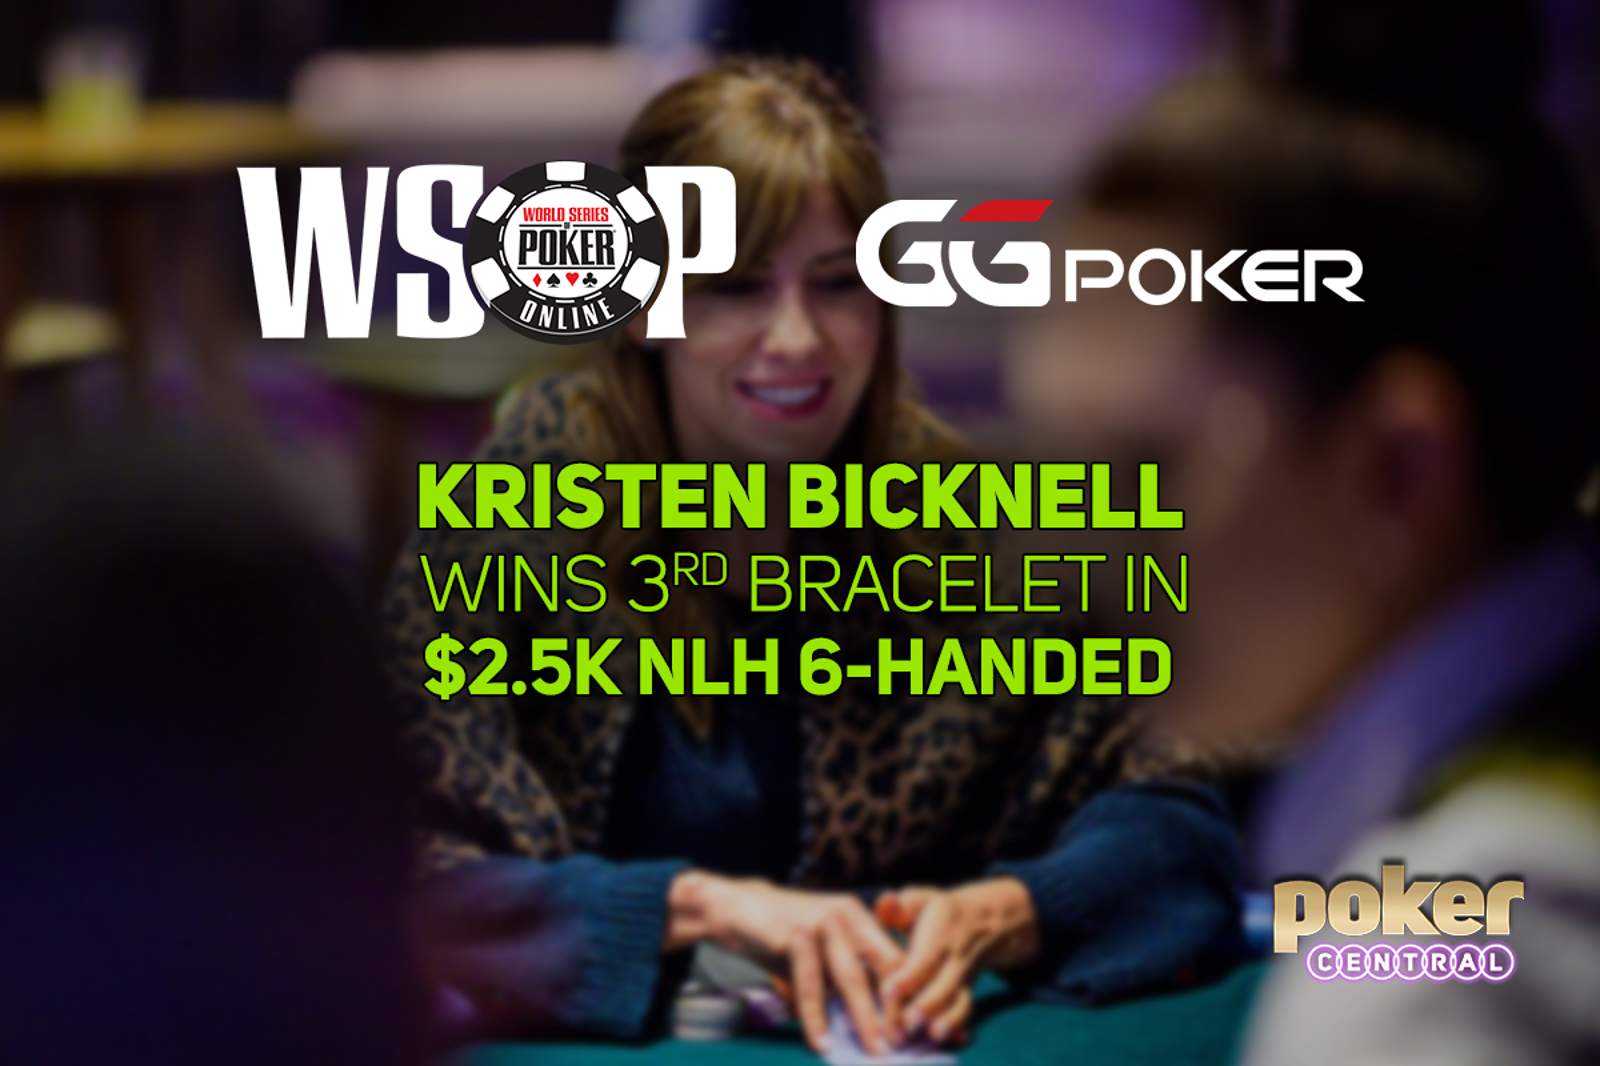 Kristen Bicknell Wins Third Bracelet in GGPoker WSOP Online $2,500 No-Limit Hold'em 6-Handed for $356,412